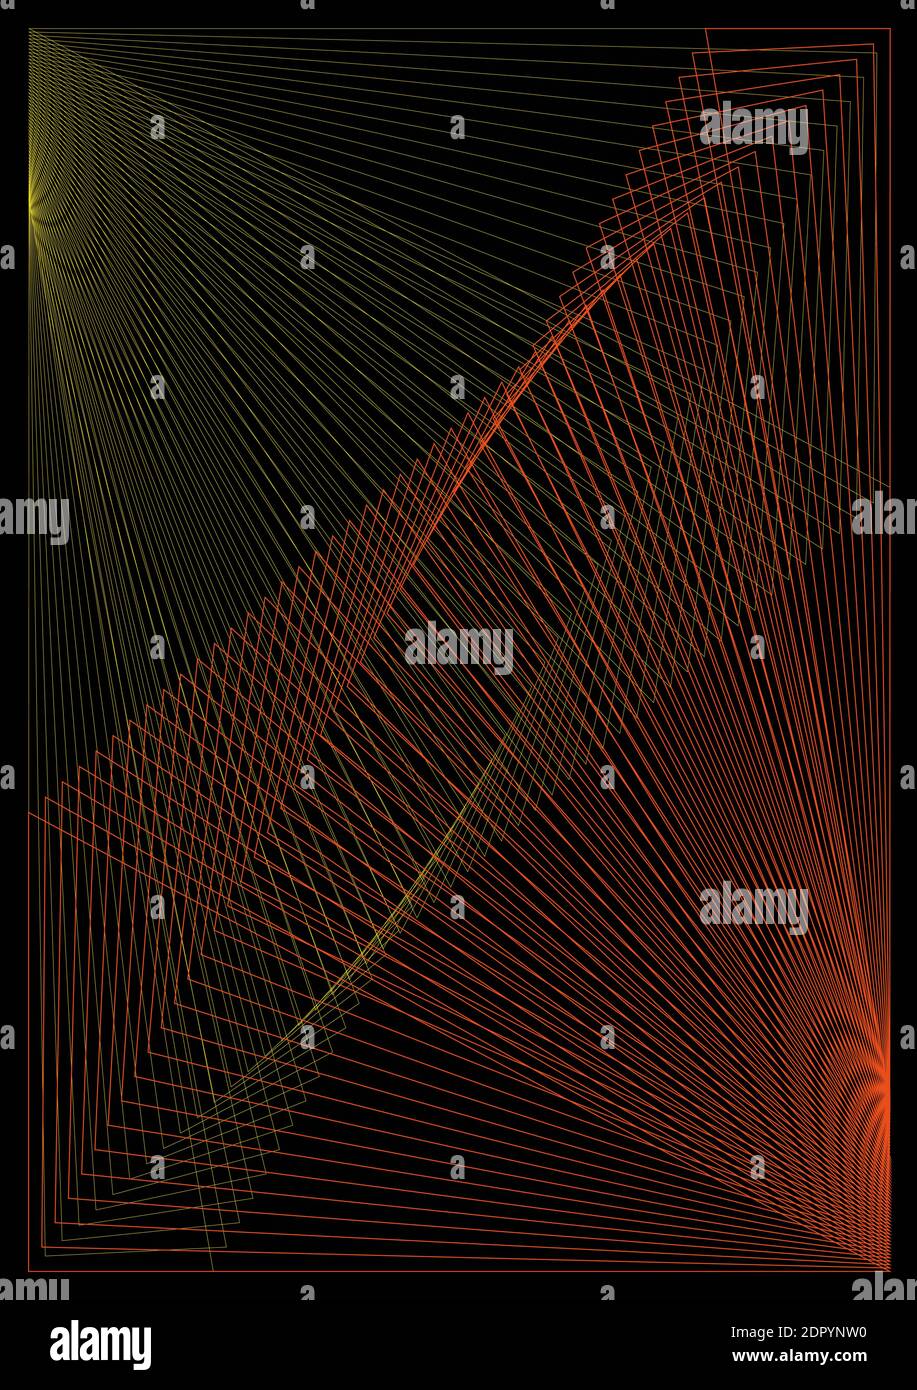 Vektor abstraktes Muster - geometrische Formen von gelb und orange Schnittlinien auf schwarzem Hintergrund Stock Vektor